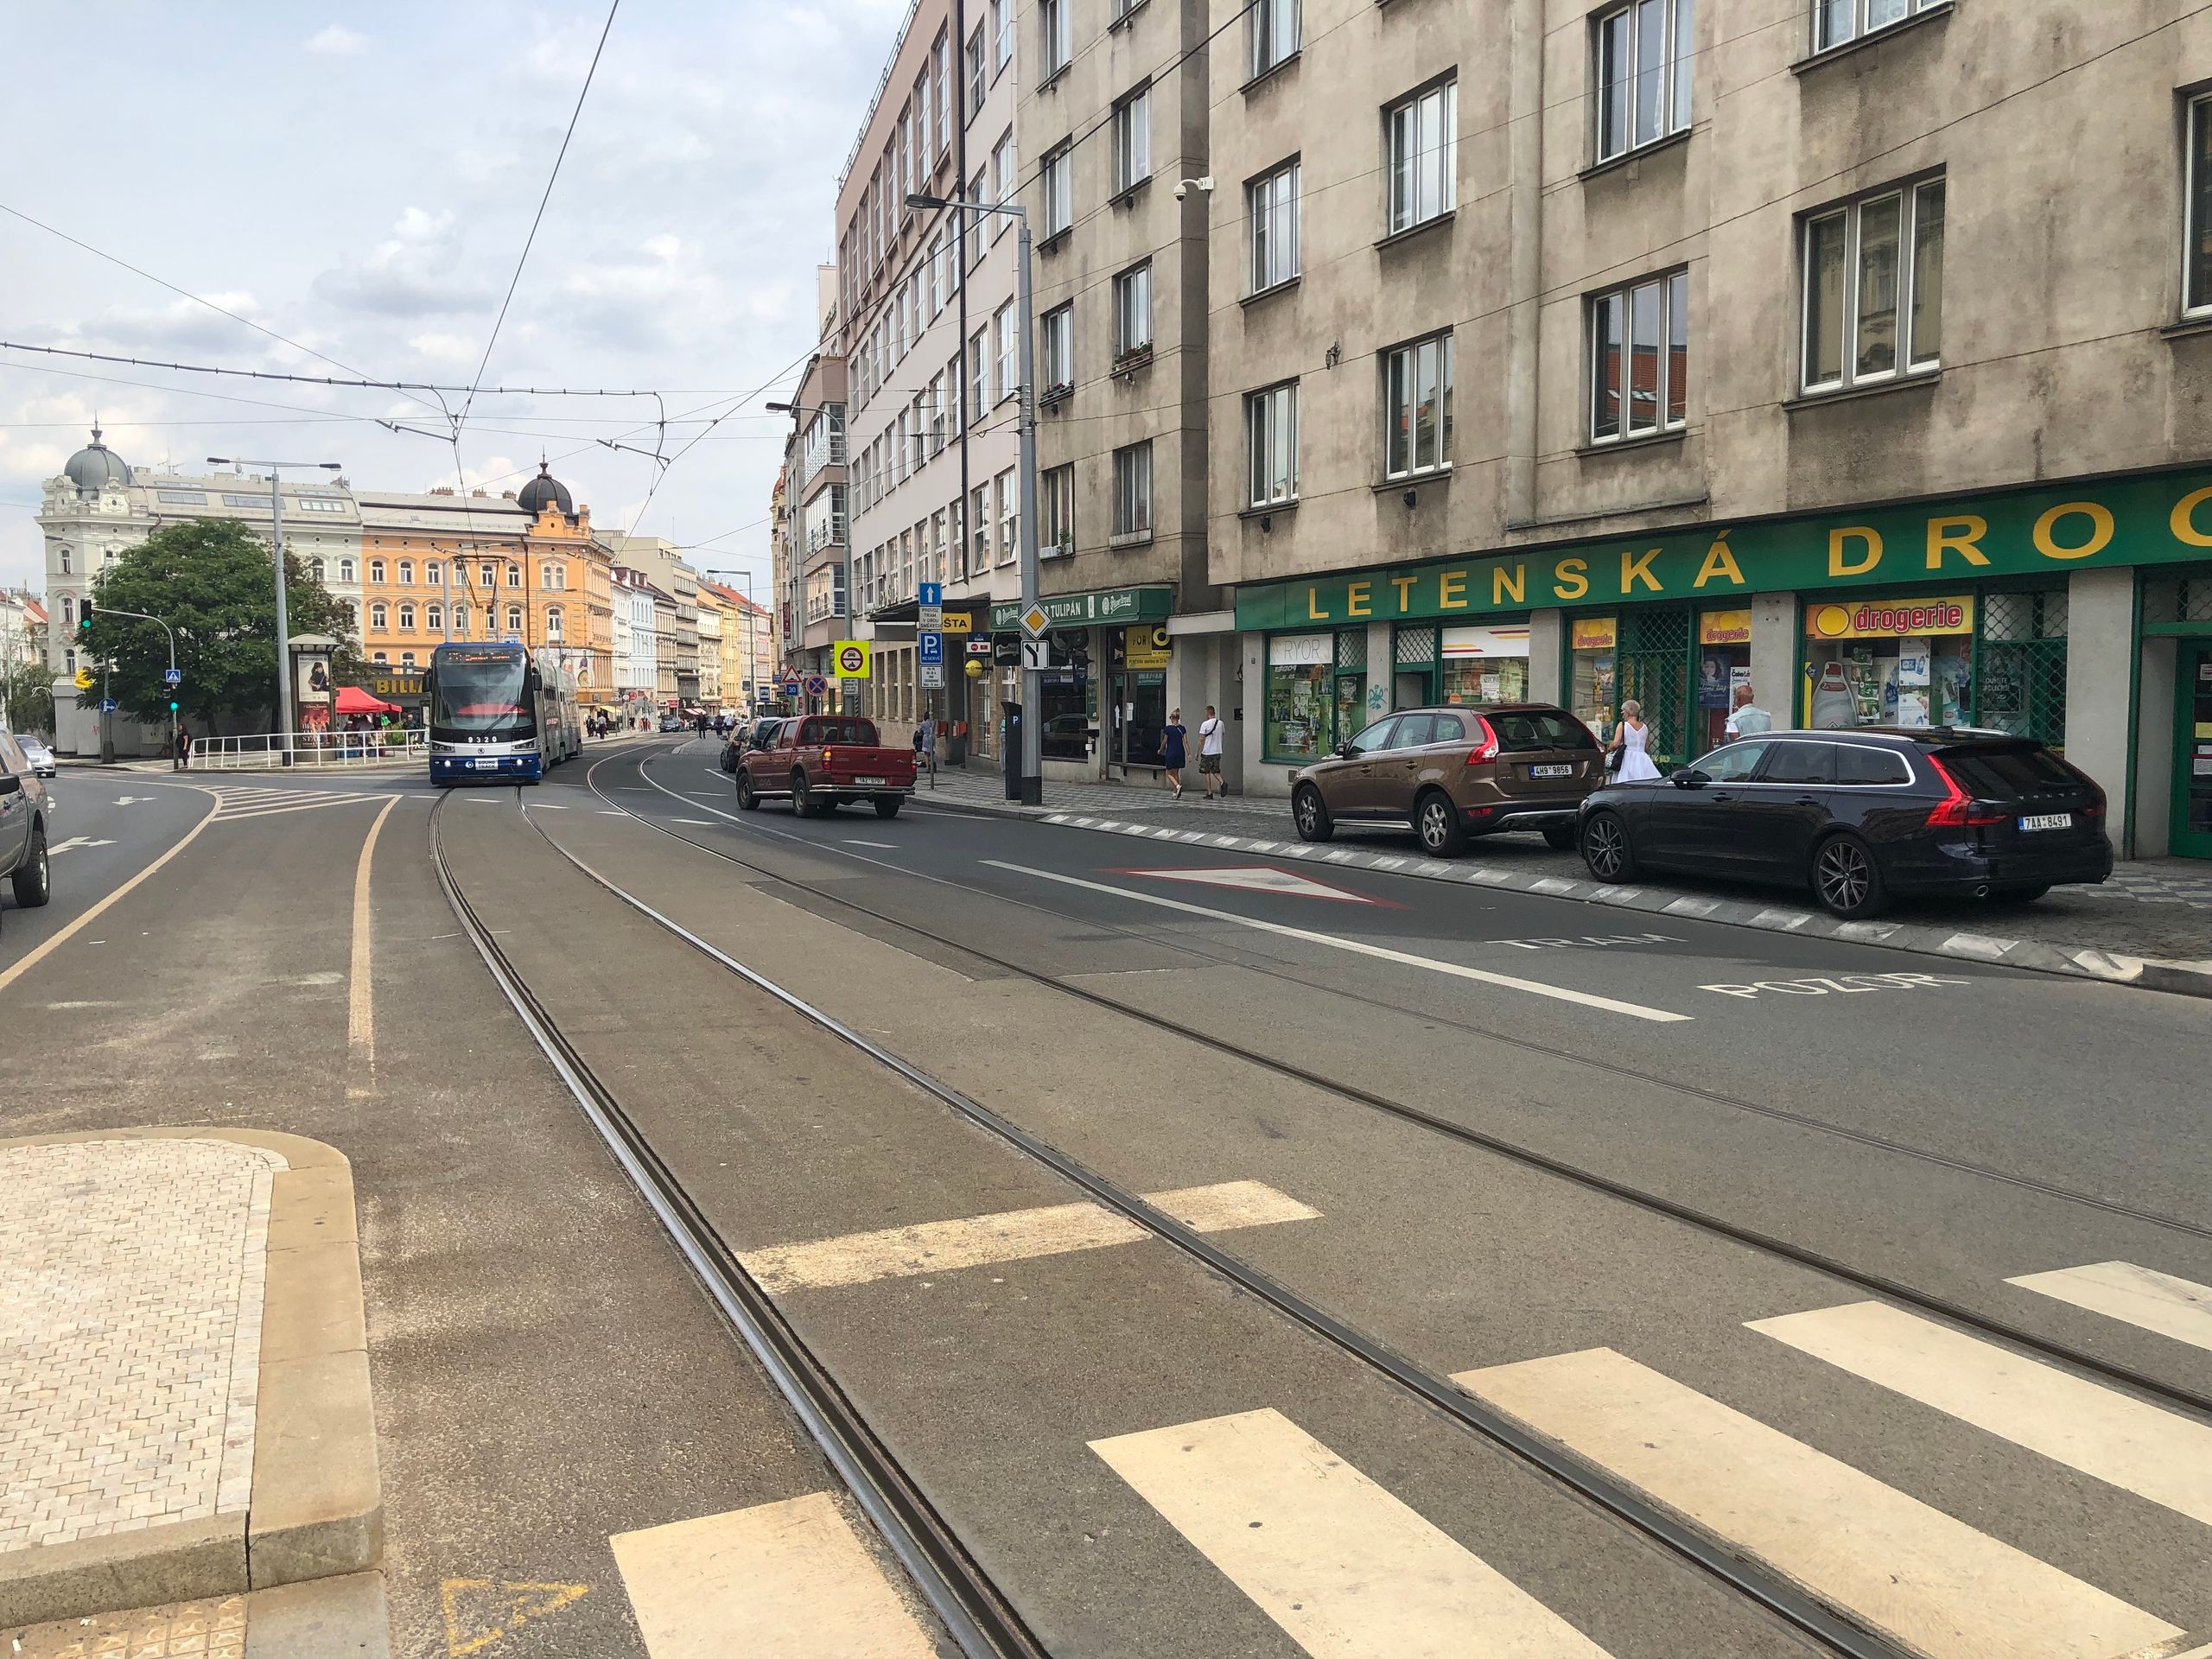 Tramvaje dej přednost - 2 - GALERIE: Křížení s tramvají (2/6)